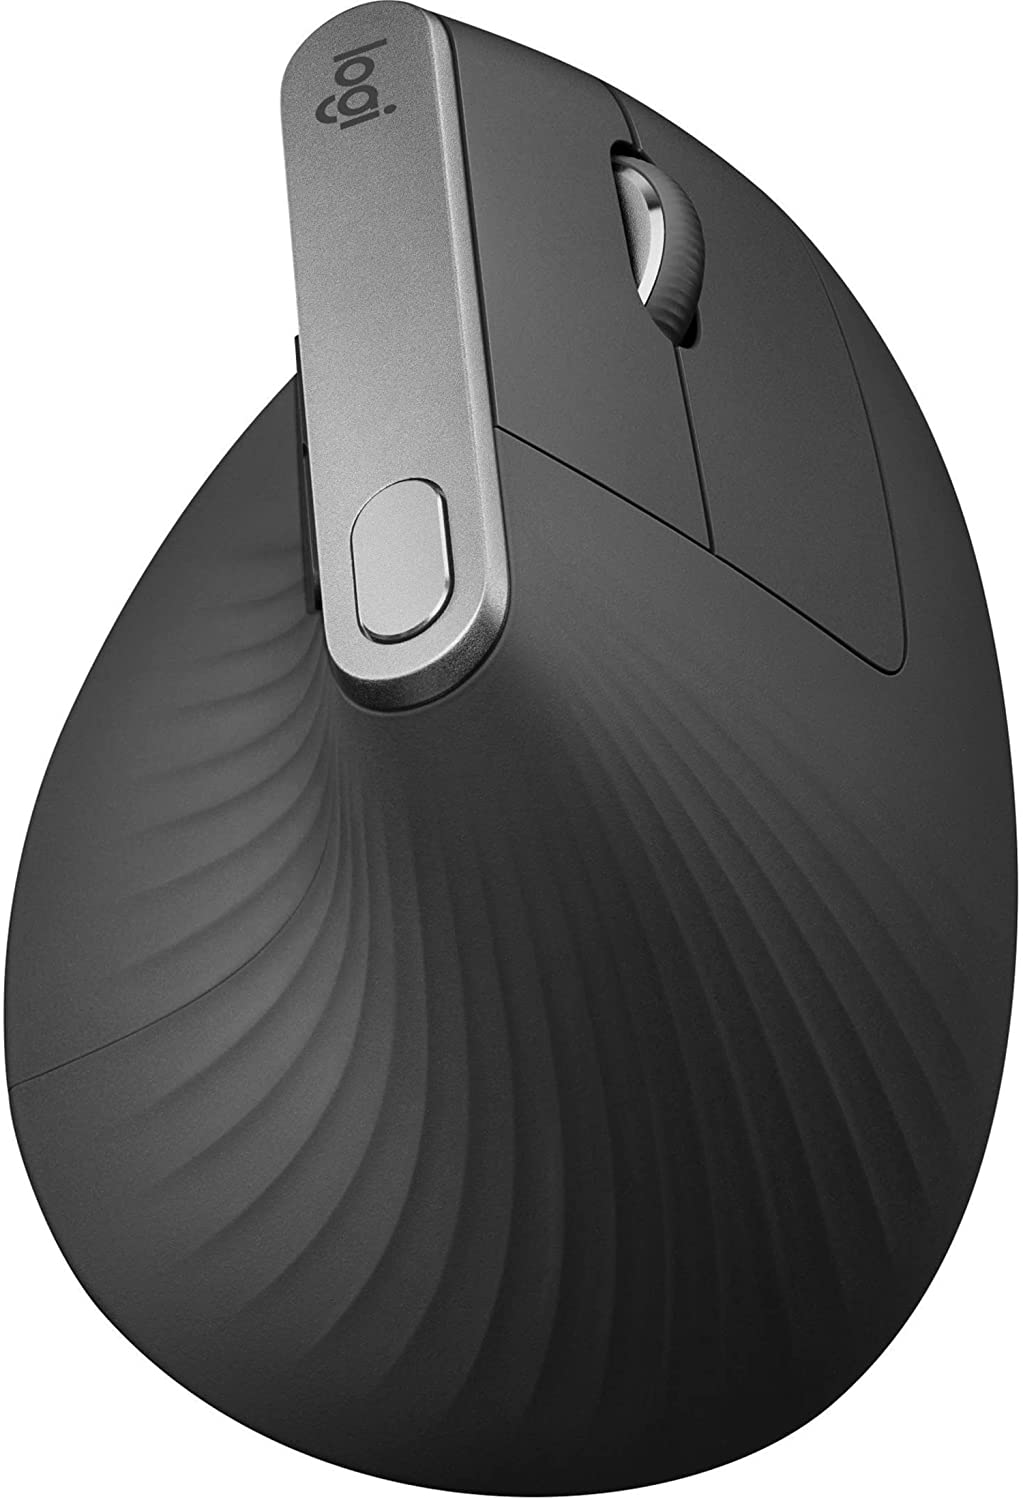 Souris verticale sans fil Logitech MX - Conception ergonomique avancée réduisant les tensions musculaires, contrôle et déplacement de contenu entre 3 ordinateurs Windows et Apple (Bluetooth ou USB), rechargeable, graphite